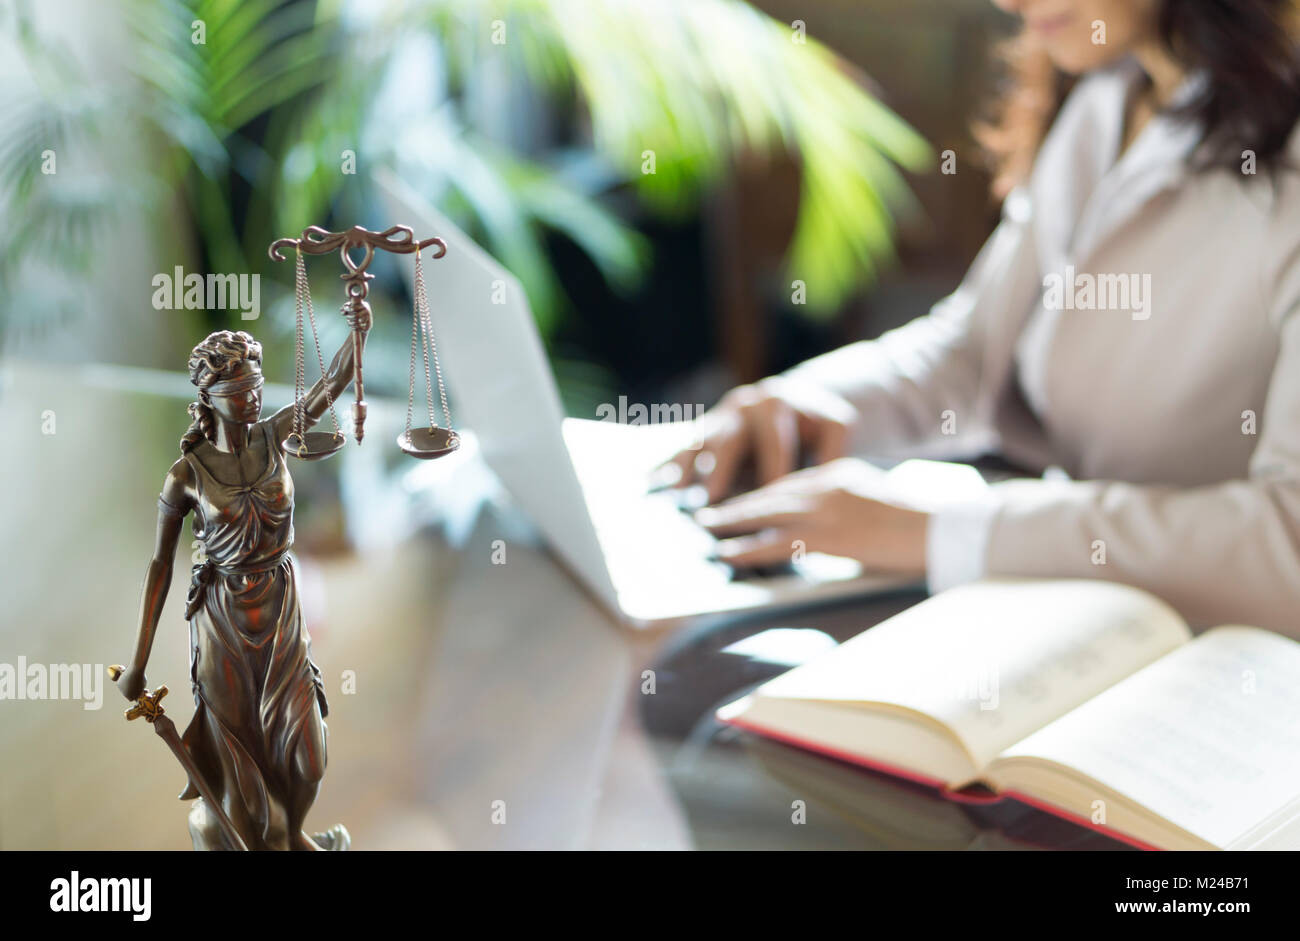 Rechtsanwalt Büro. Statue von Gerechtigkeit mit Waagen und Rechtsanwalt, der an einem Notebook arbeitet. Juristische Recht, Beratung und Gerechtigkeit Konzept Stockfoto